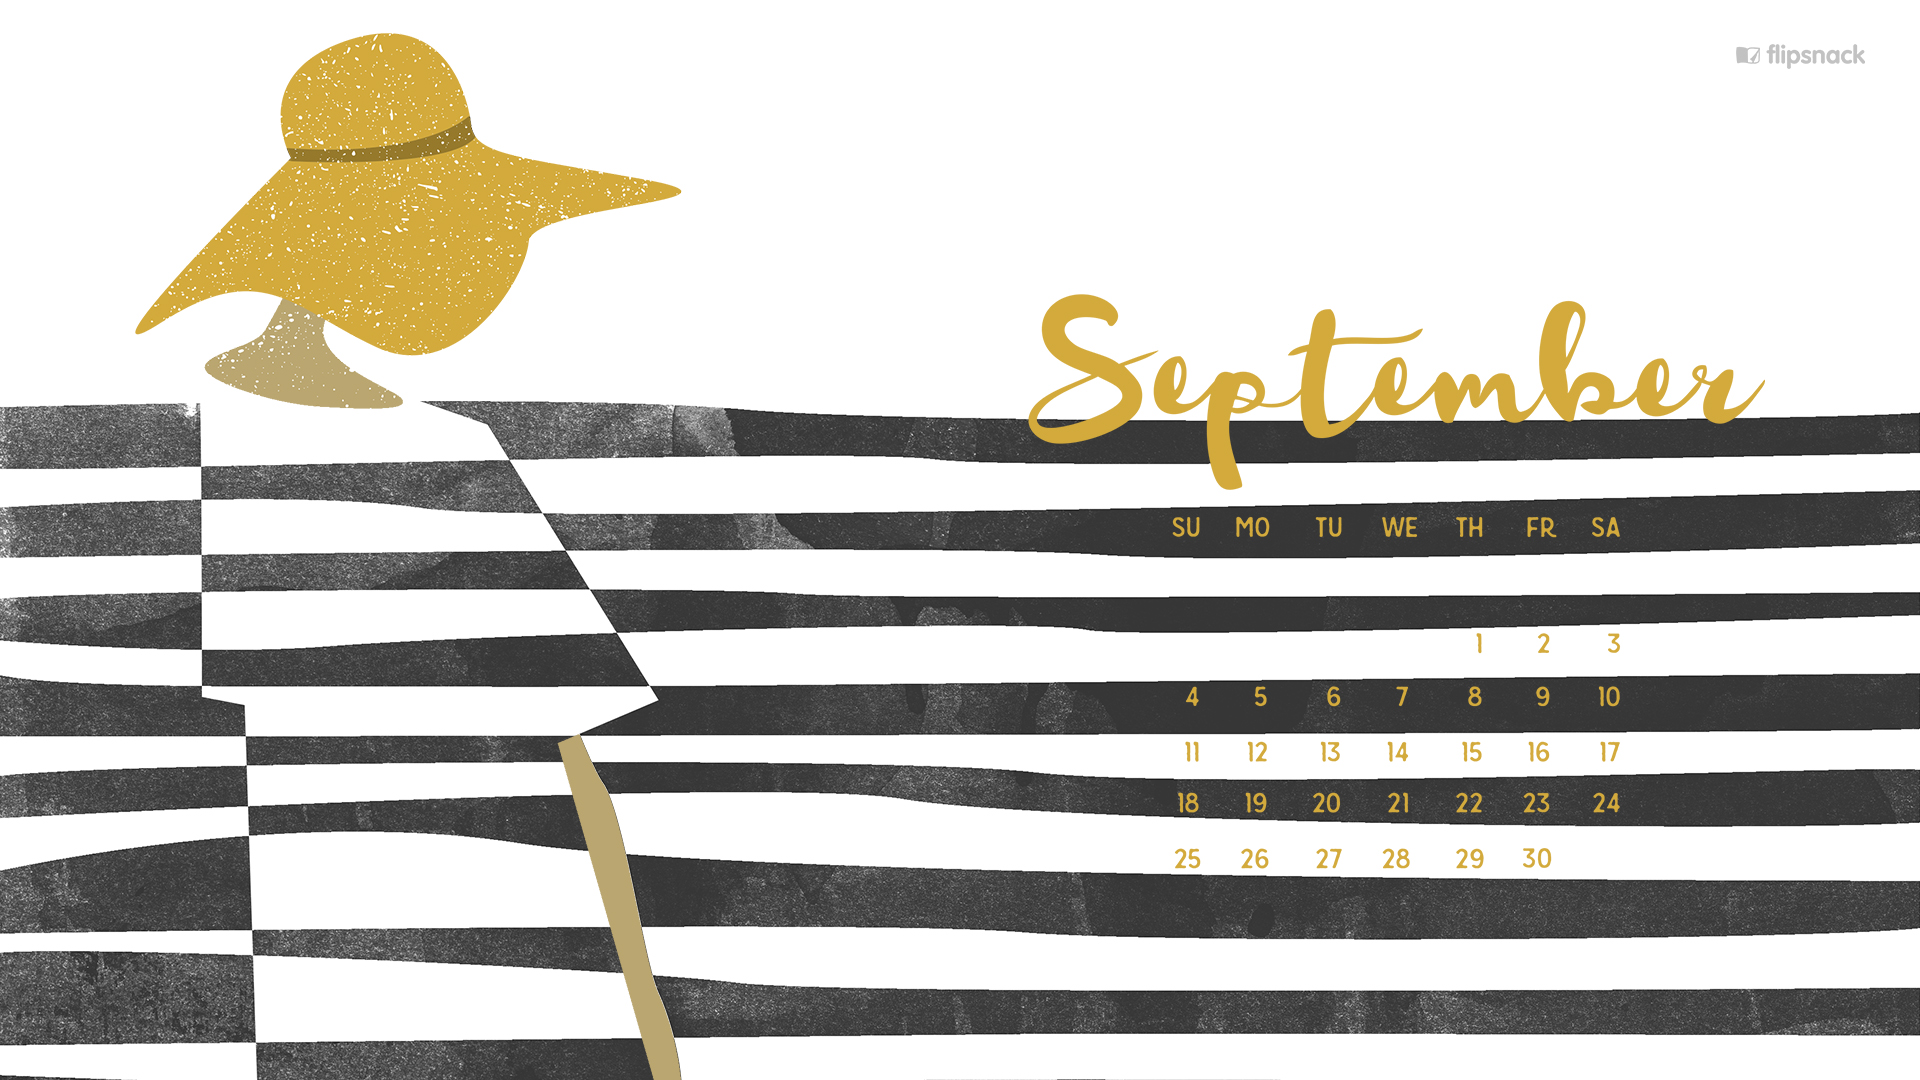 September Calendar Desktop Wallpaper